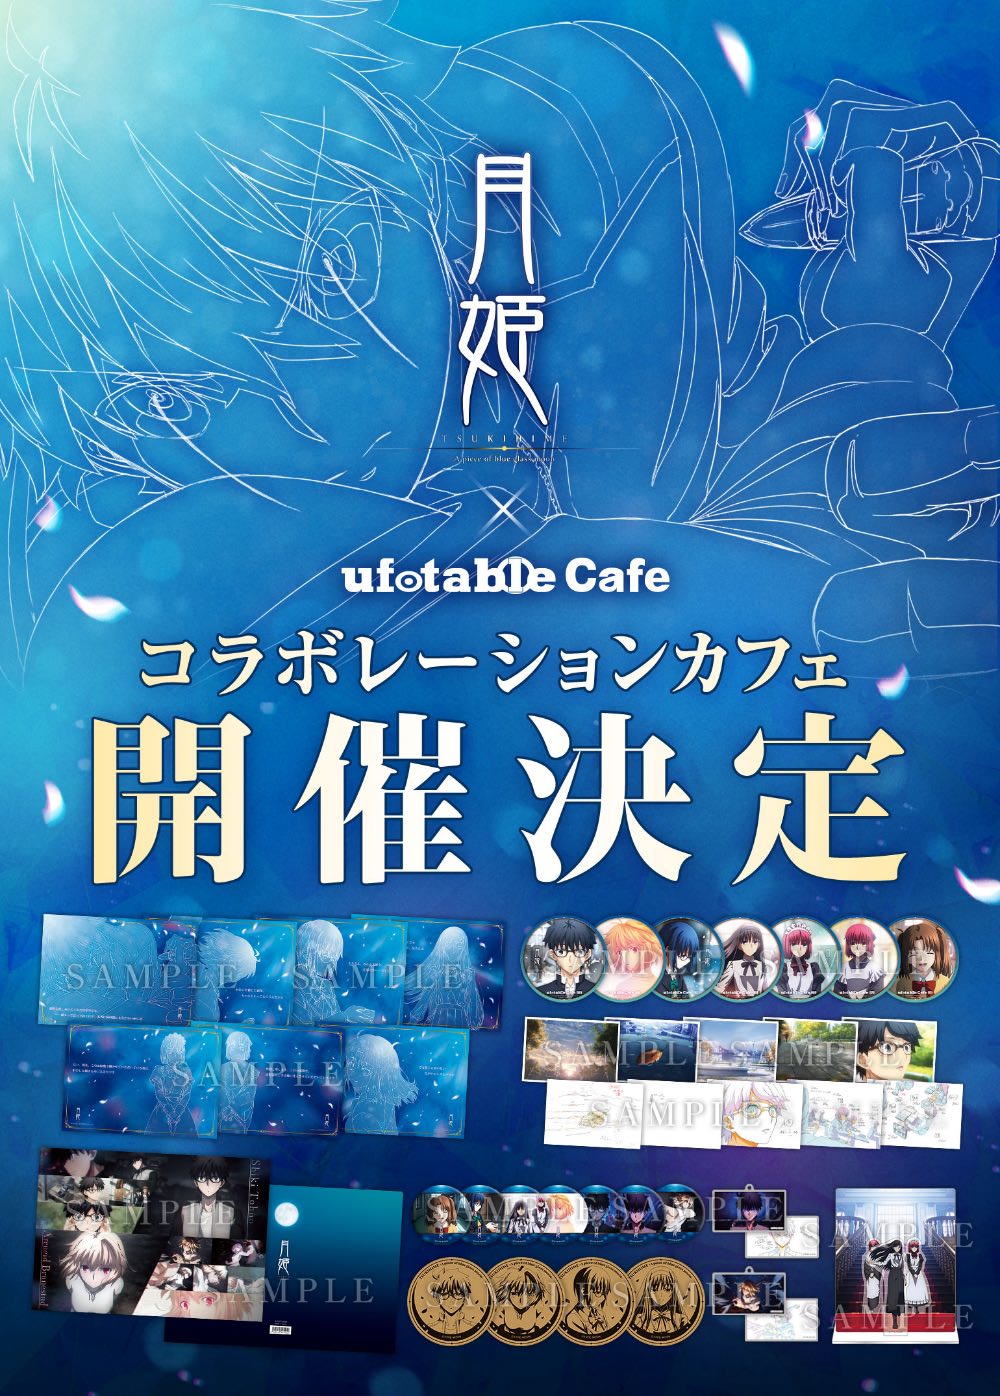 月姫カフェ in ufotable Cafe 9月7日よりコラボ開催!